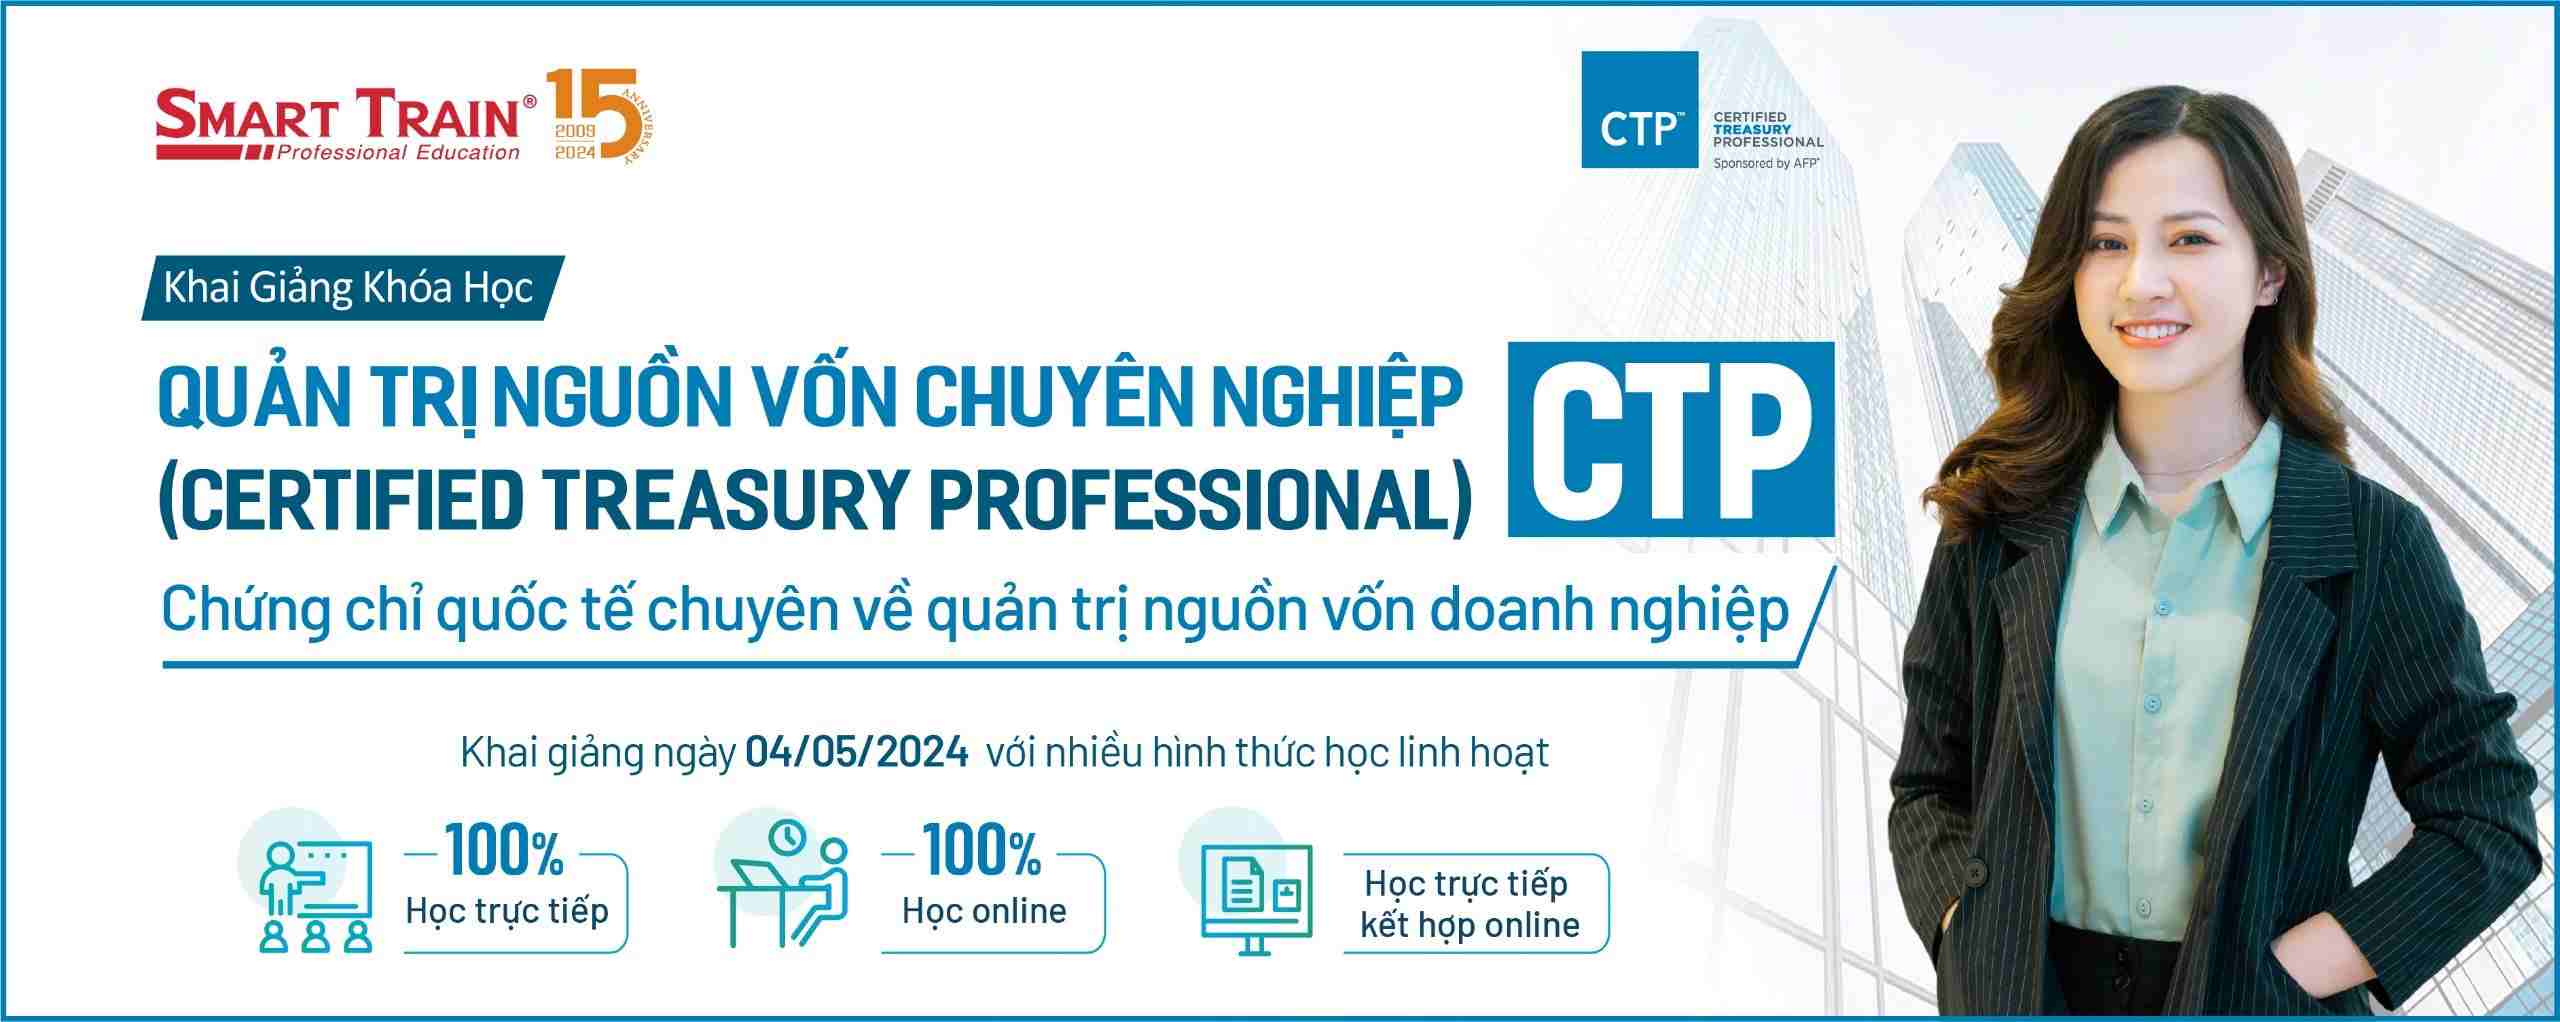 CTP-banner